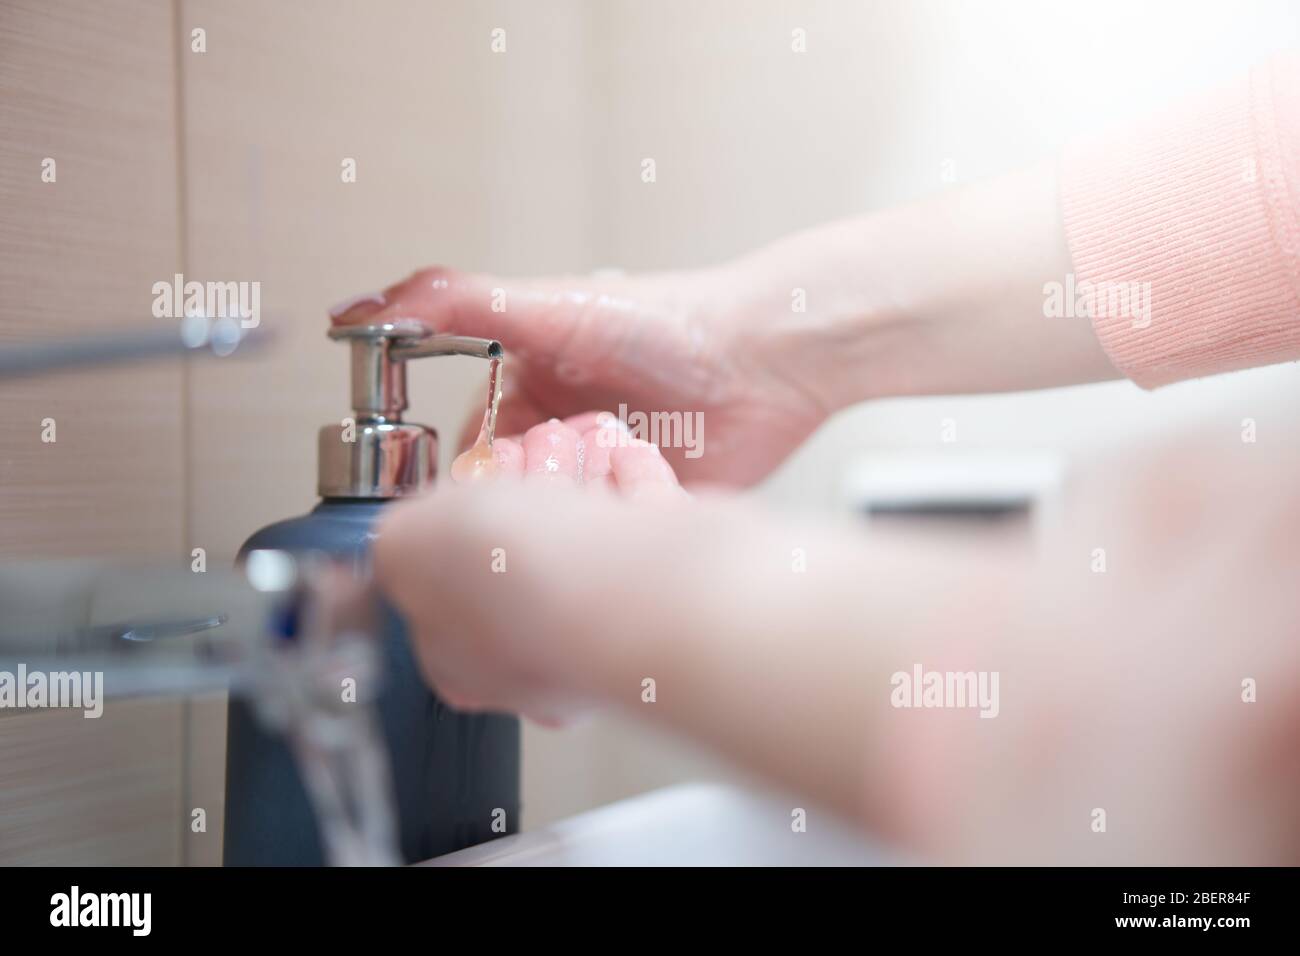 Lavage des mains avec du savon sous l'eau dans la salle de bains Banque D'Images